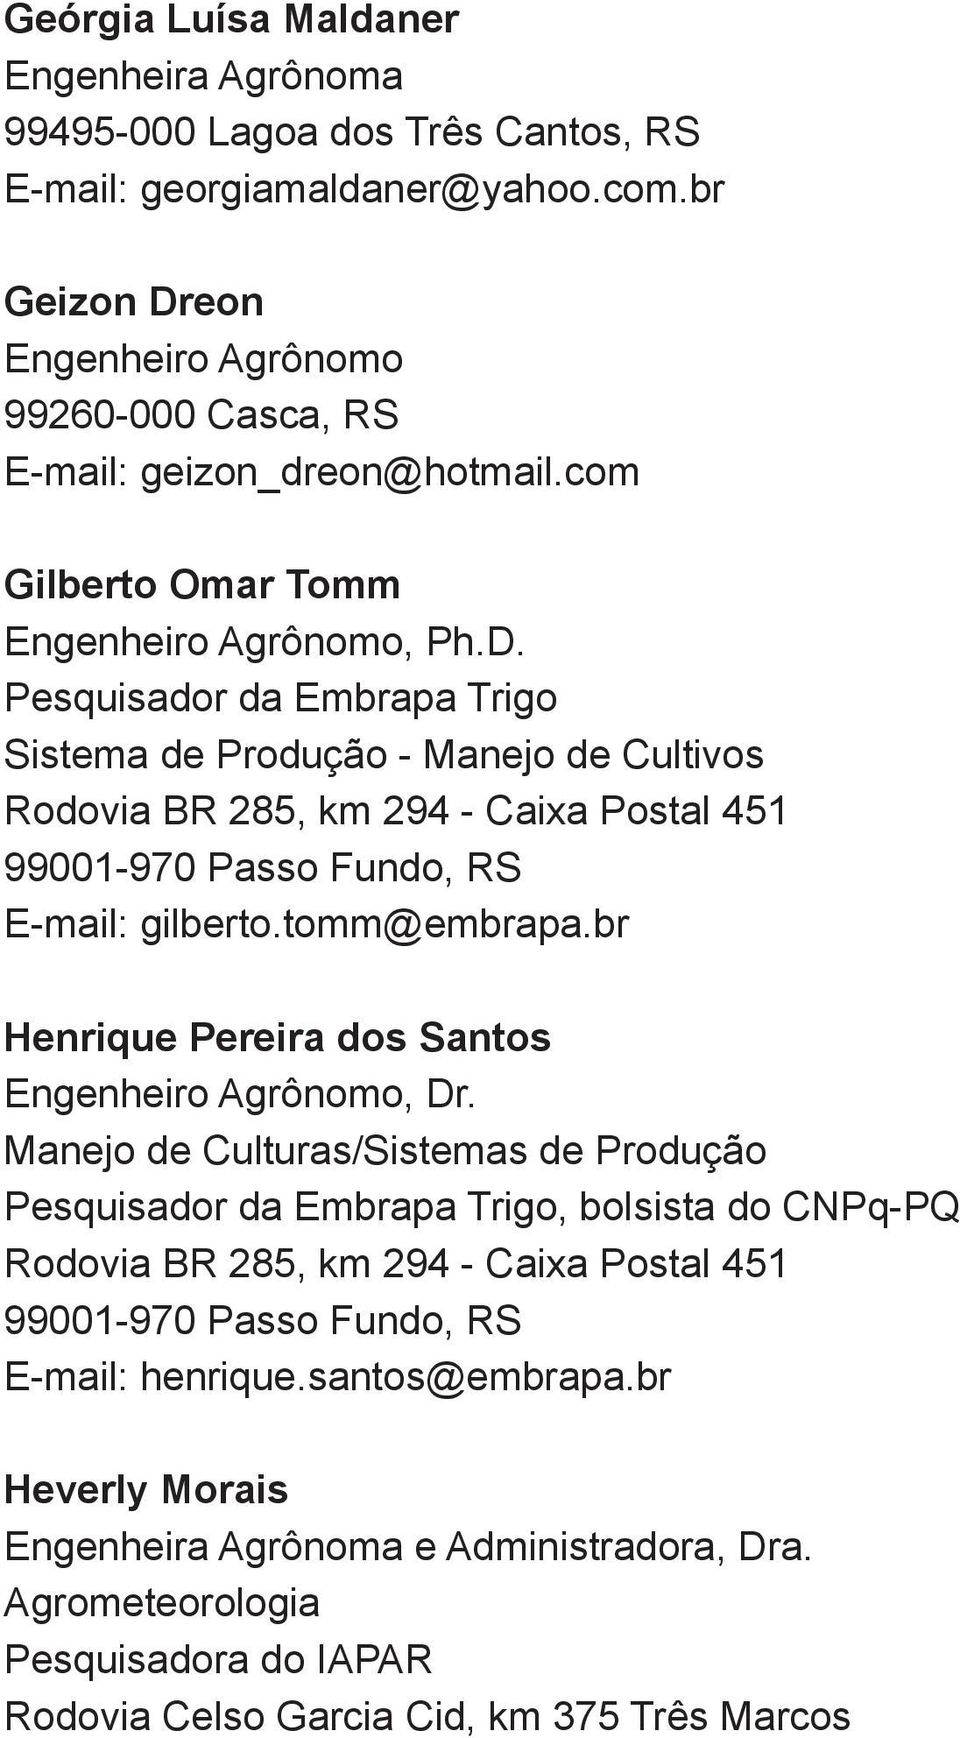 tomm@embrapa.br Henrique Pereira dos Santos Manejo de Culturas/Sistemas de Produção Pesquisador da Embrapa Trigo, bolsista do CNPq-PQ E-mail: henrique.